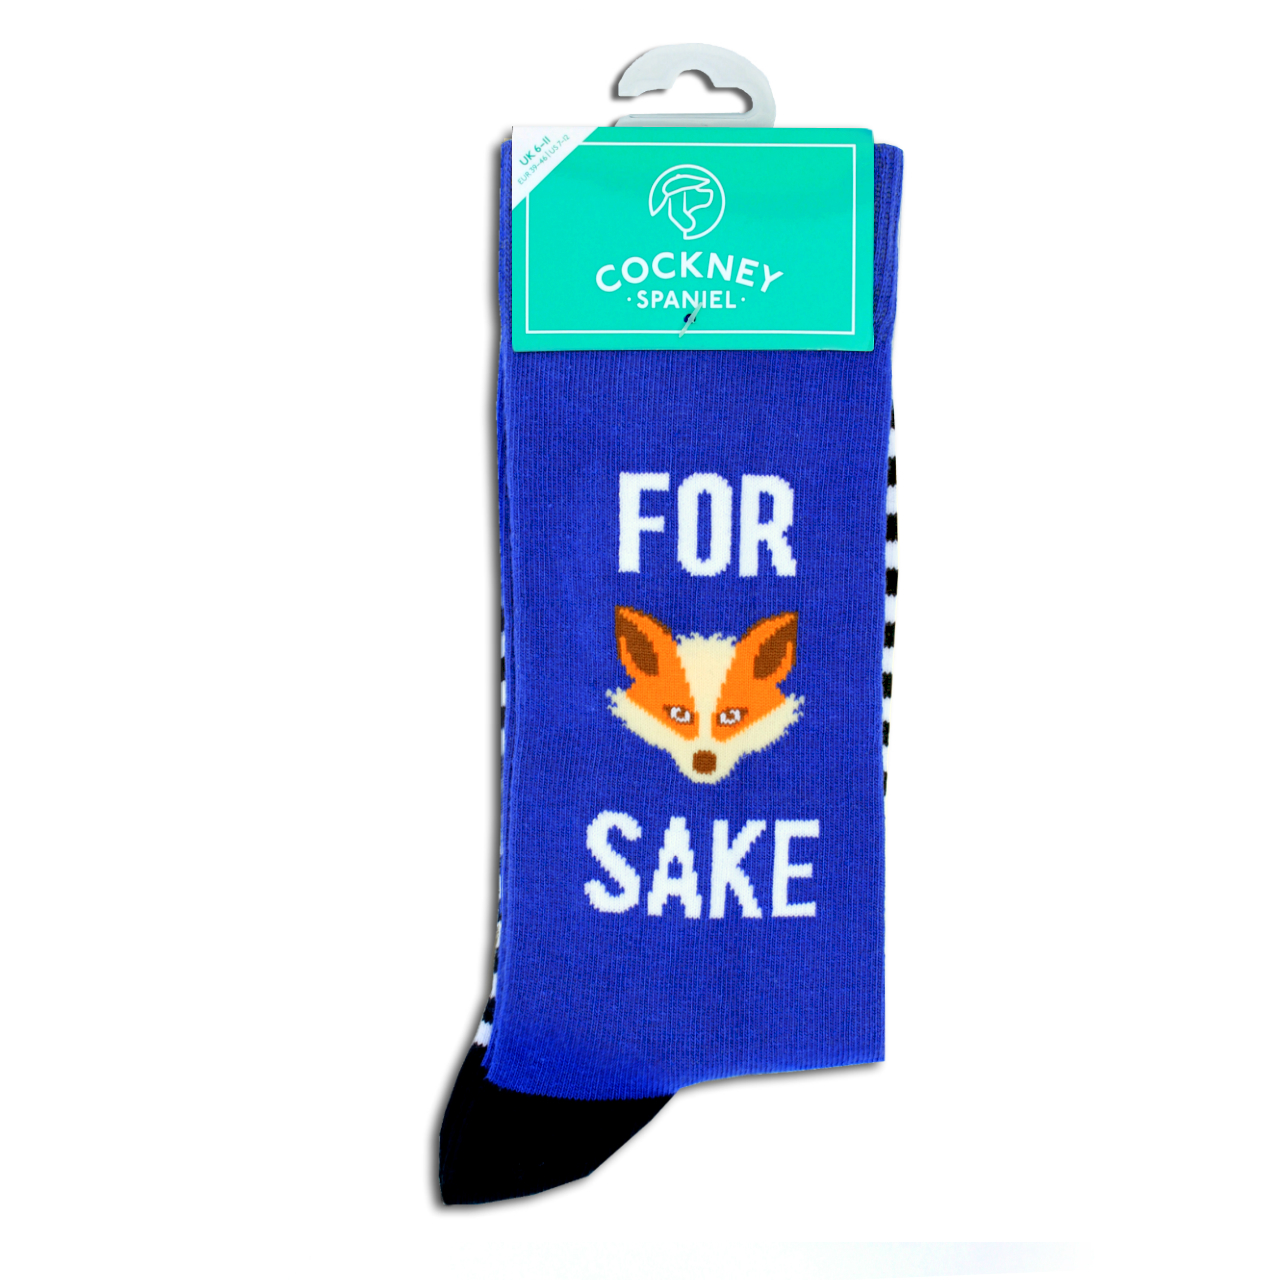 Cockney Spaniel For Fox Sake Mens Novelty Socks